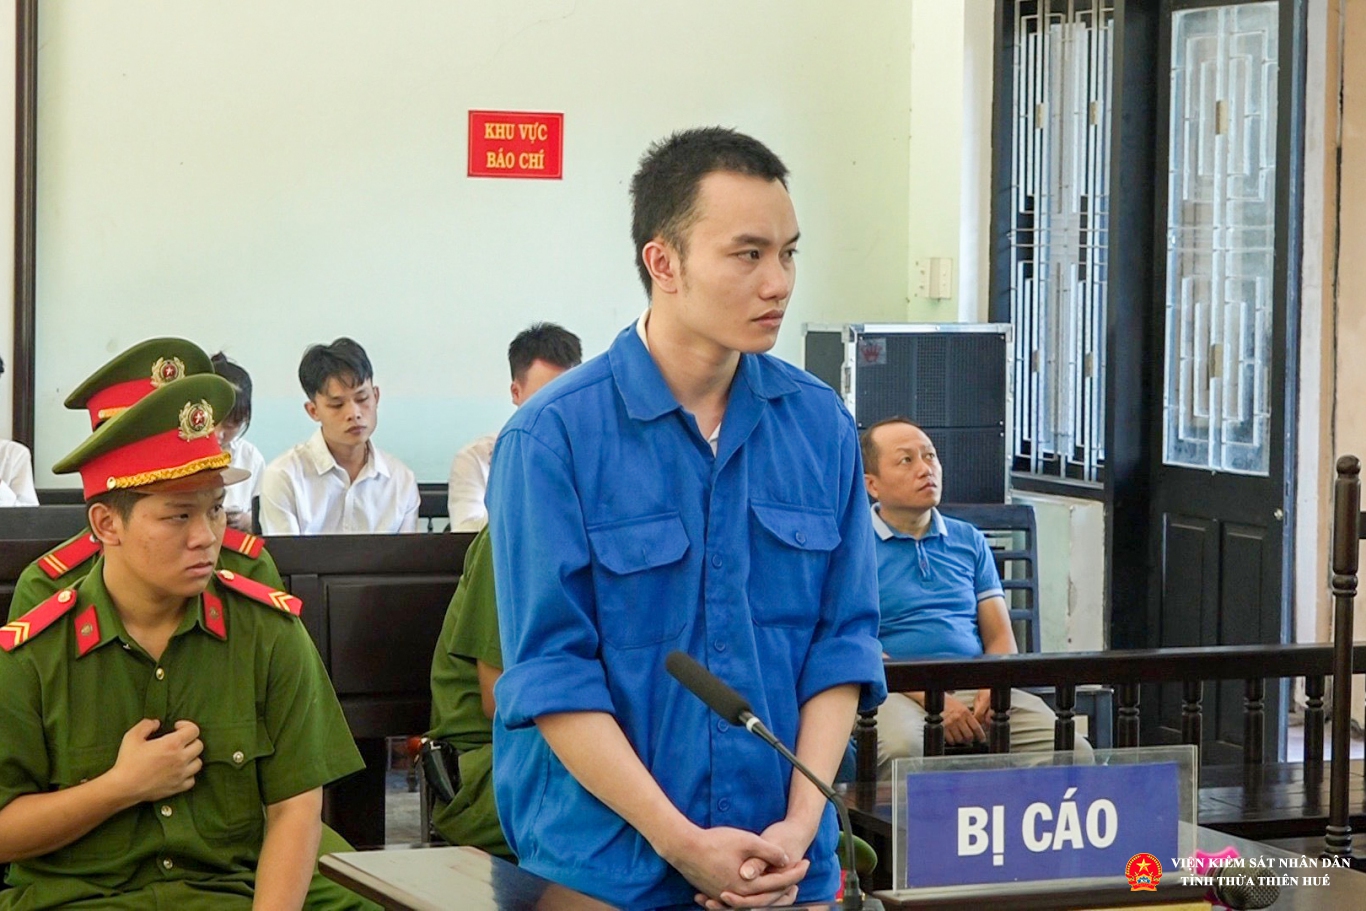 Bị cáo Nguyễn Văn Huyền Đức tại tòa án